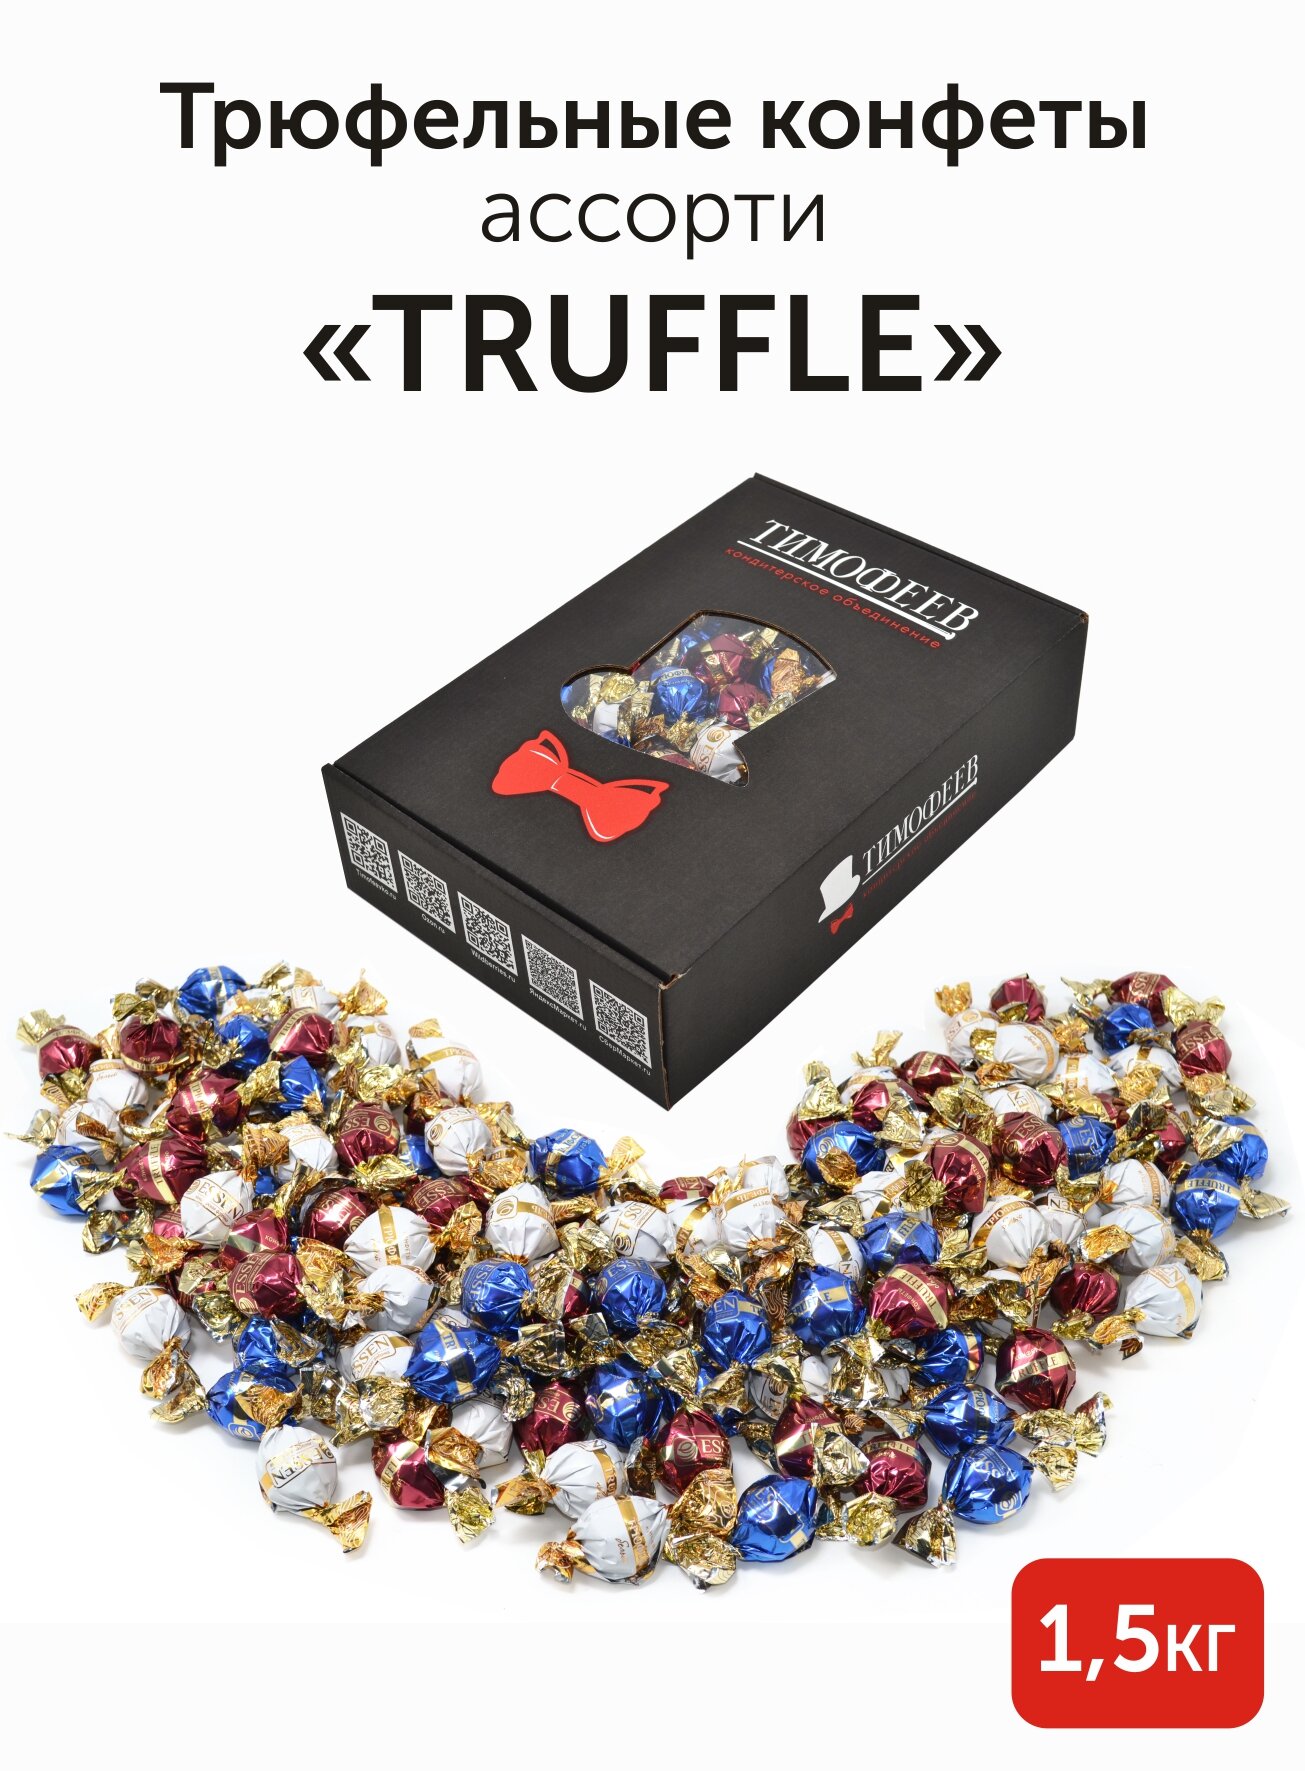 Подарочный набор ассорти трюфельных конфет "TRUFFLE" в коробке, Тимофеев ко, 1,5 кг